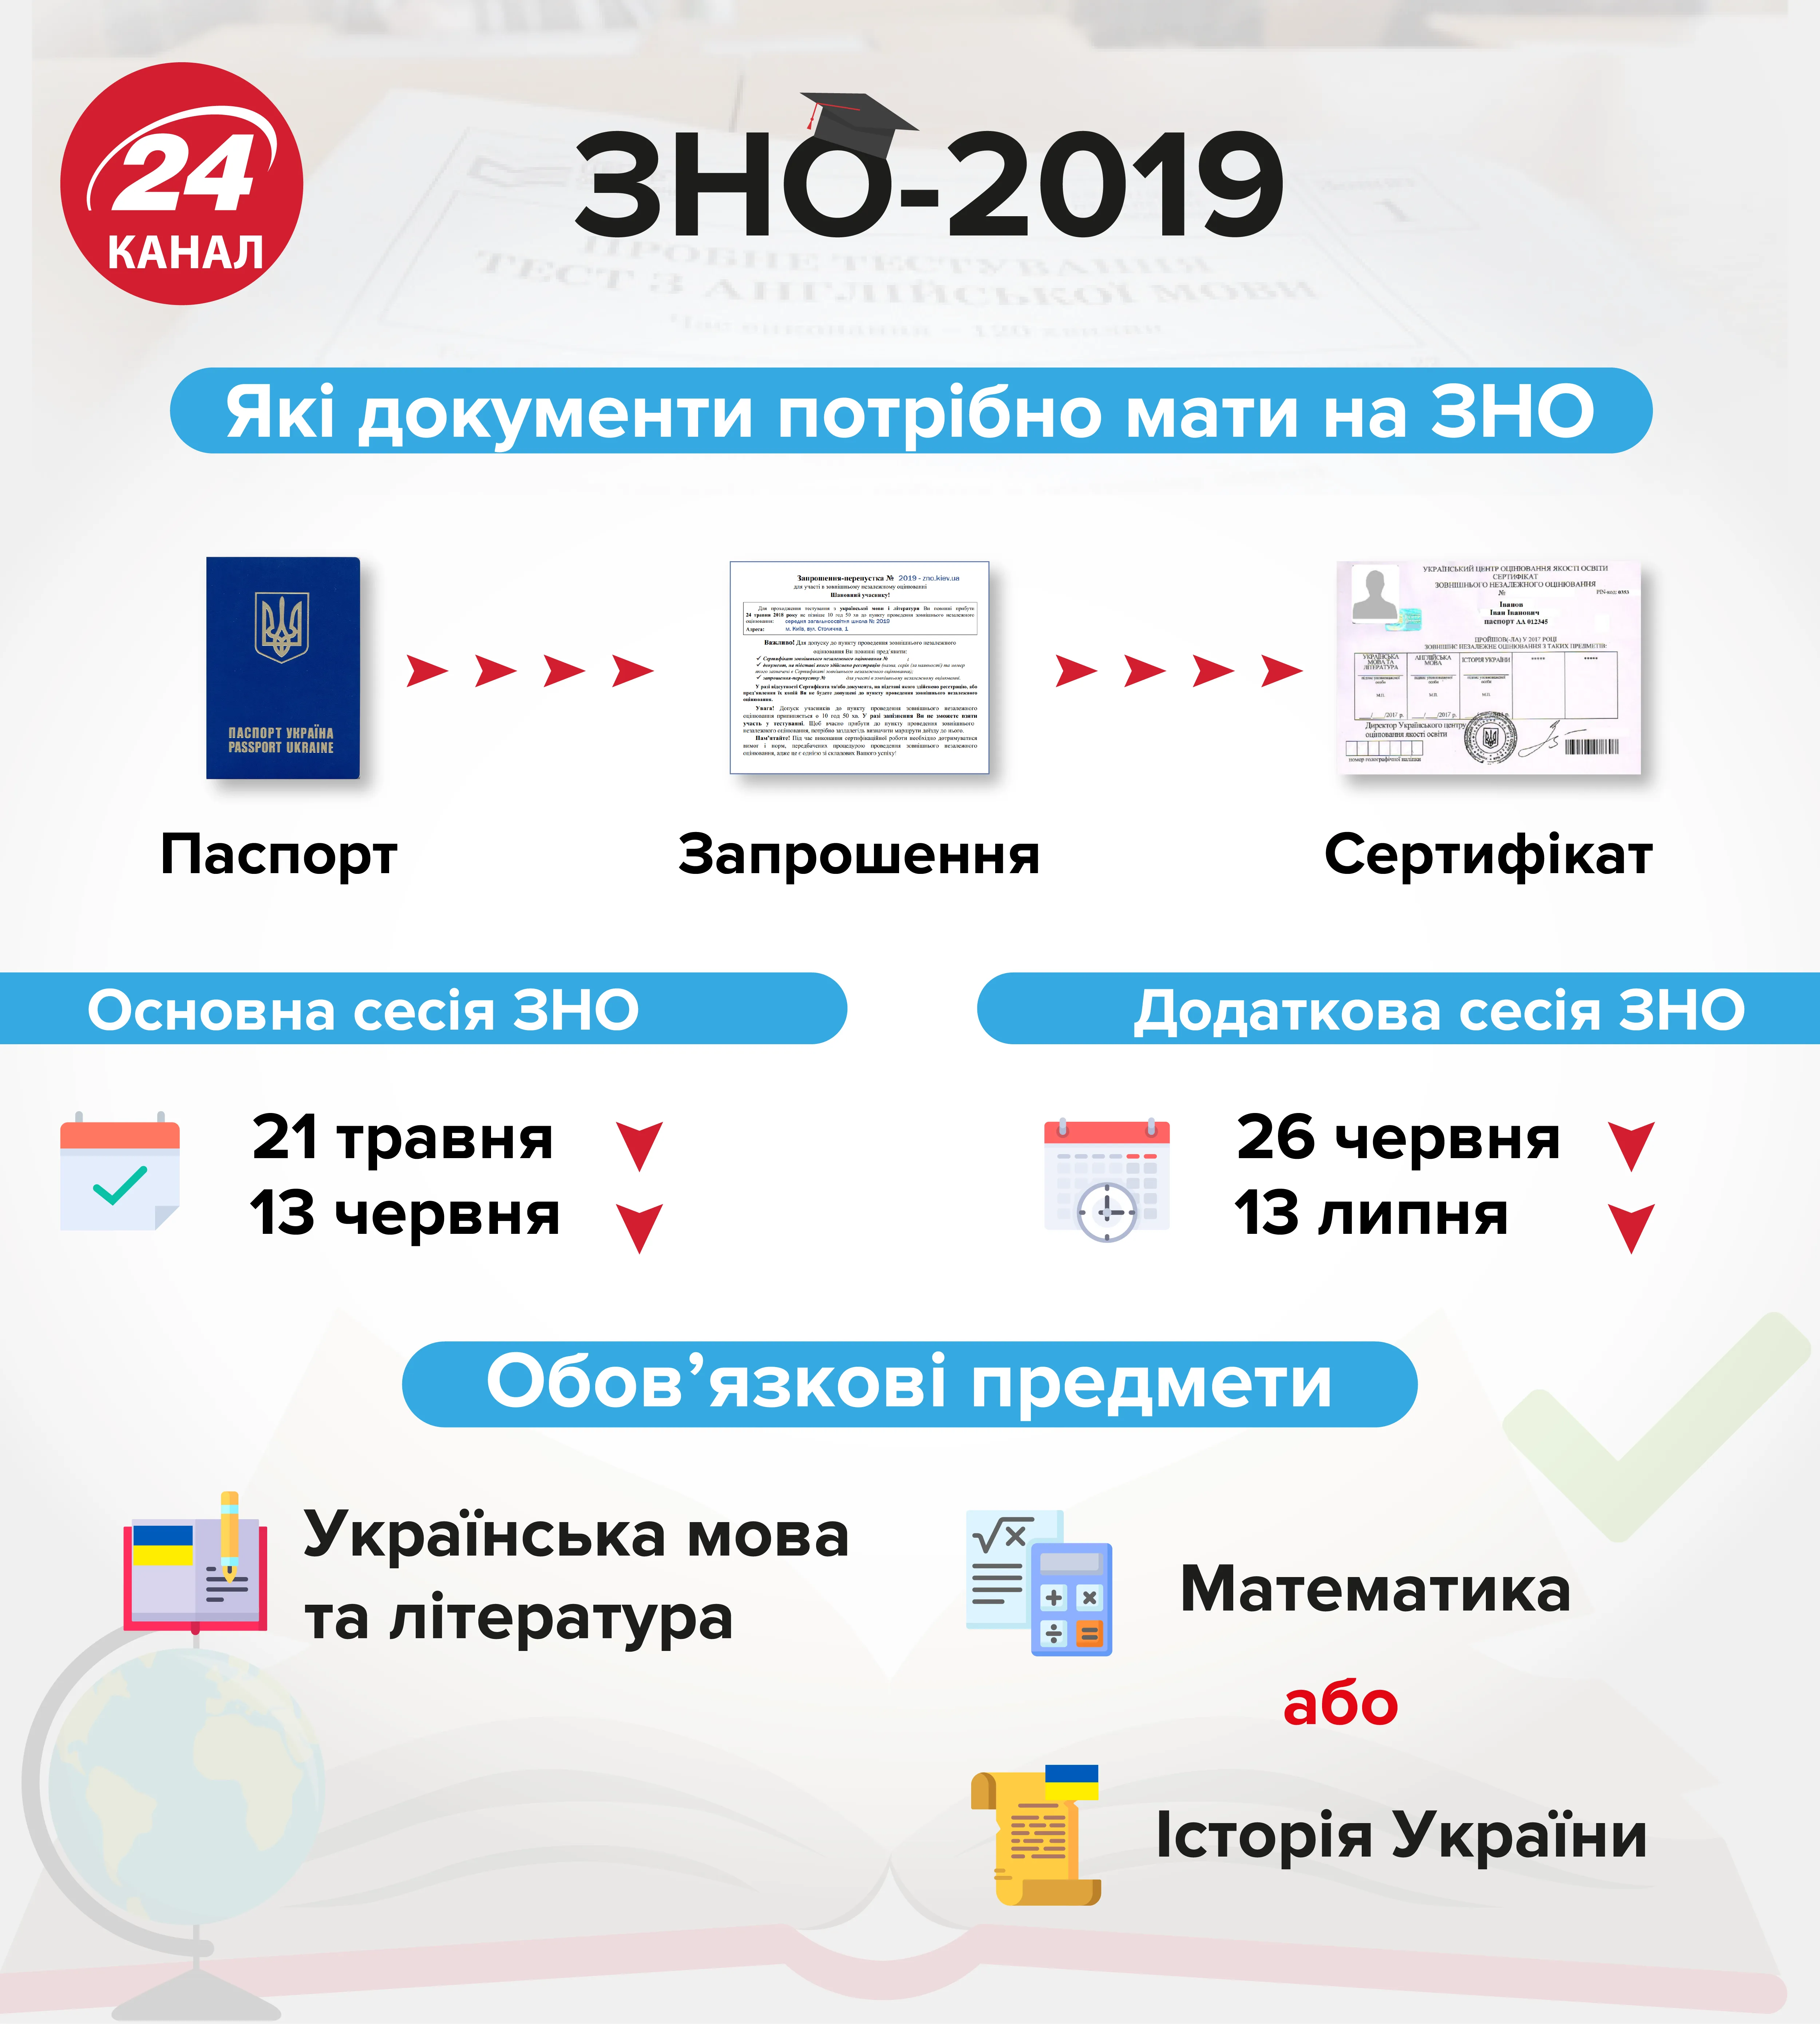 ЗНО 2019 головні дати додаткова сесія ЗНО освіта Україна